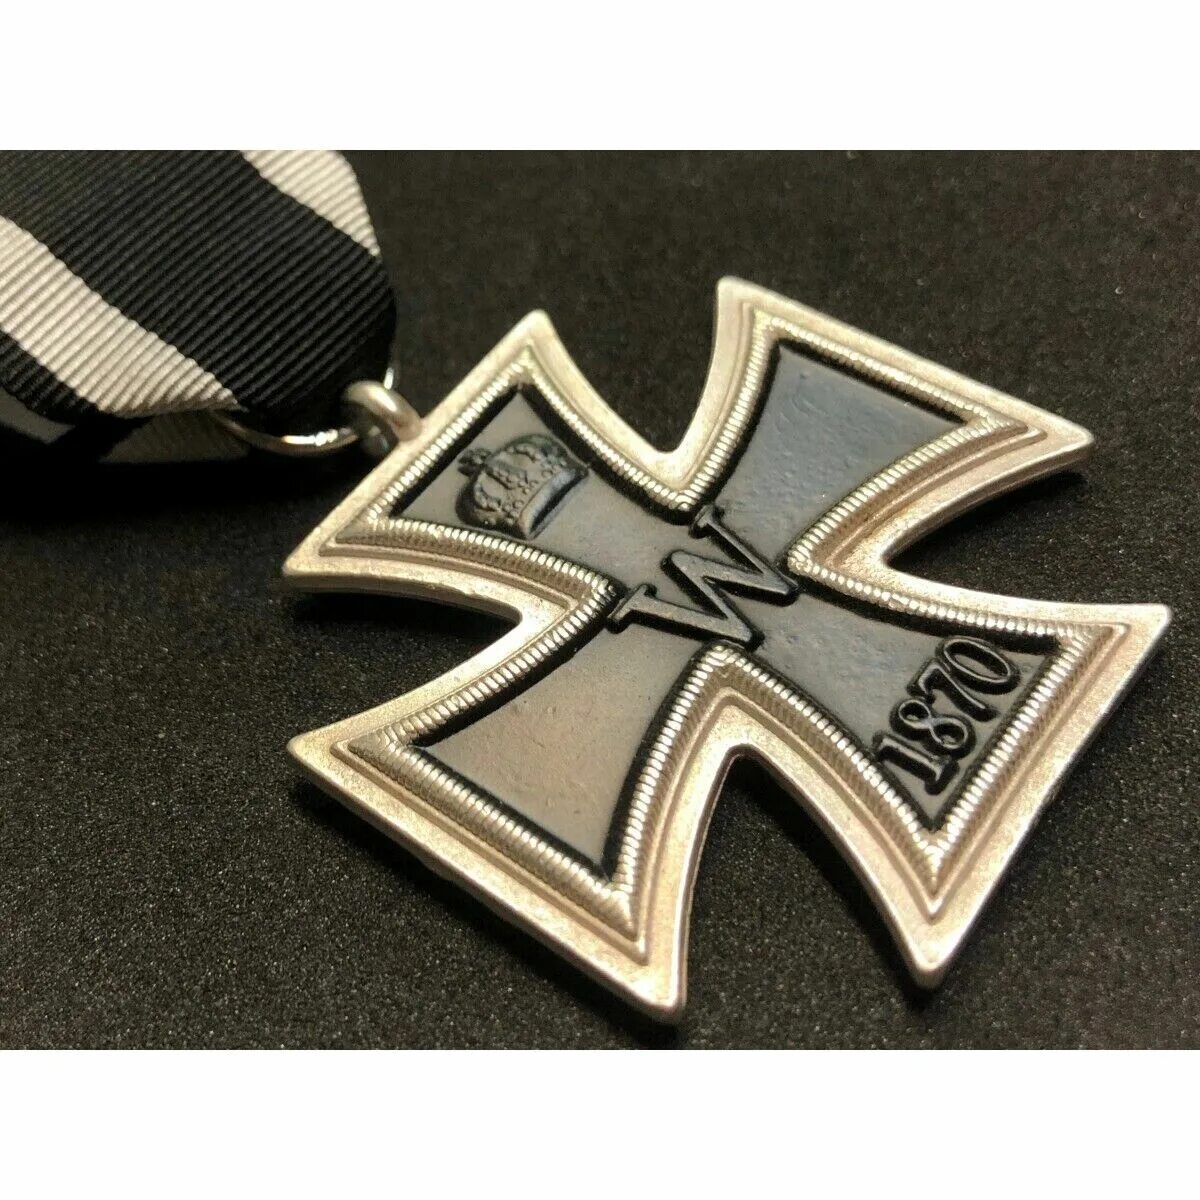 Немецкий крест купить. Iron Cross 2nd class. Немецкий крест Кройц. Немецкий крест Балкенкройц. Пряжка Iron Cross.